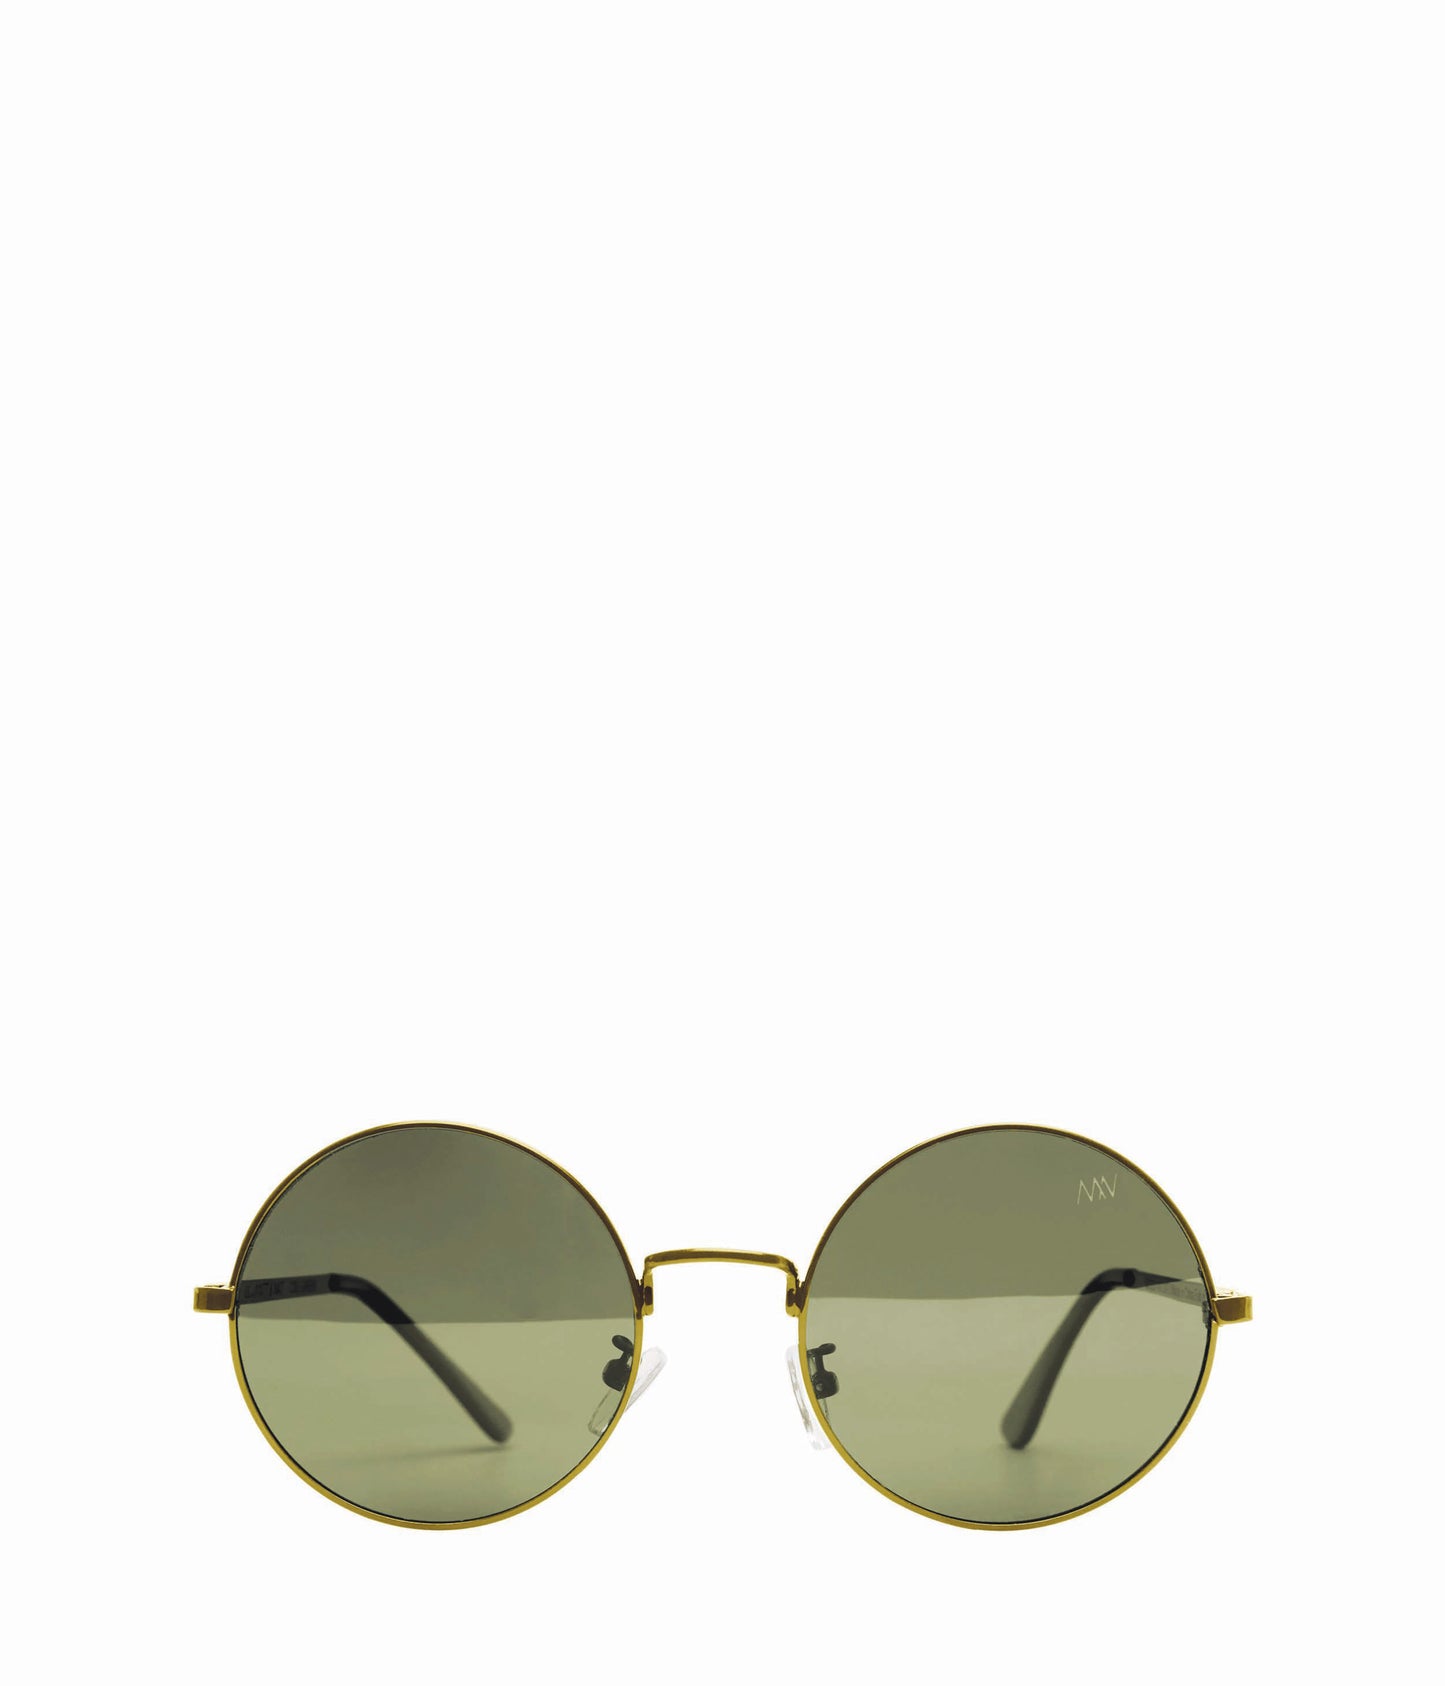 COLE SM Small Round Sunglasses